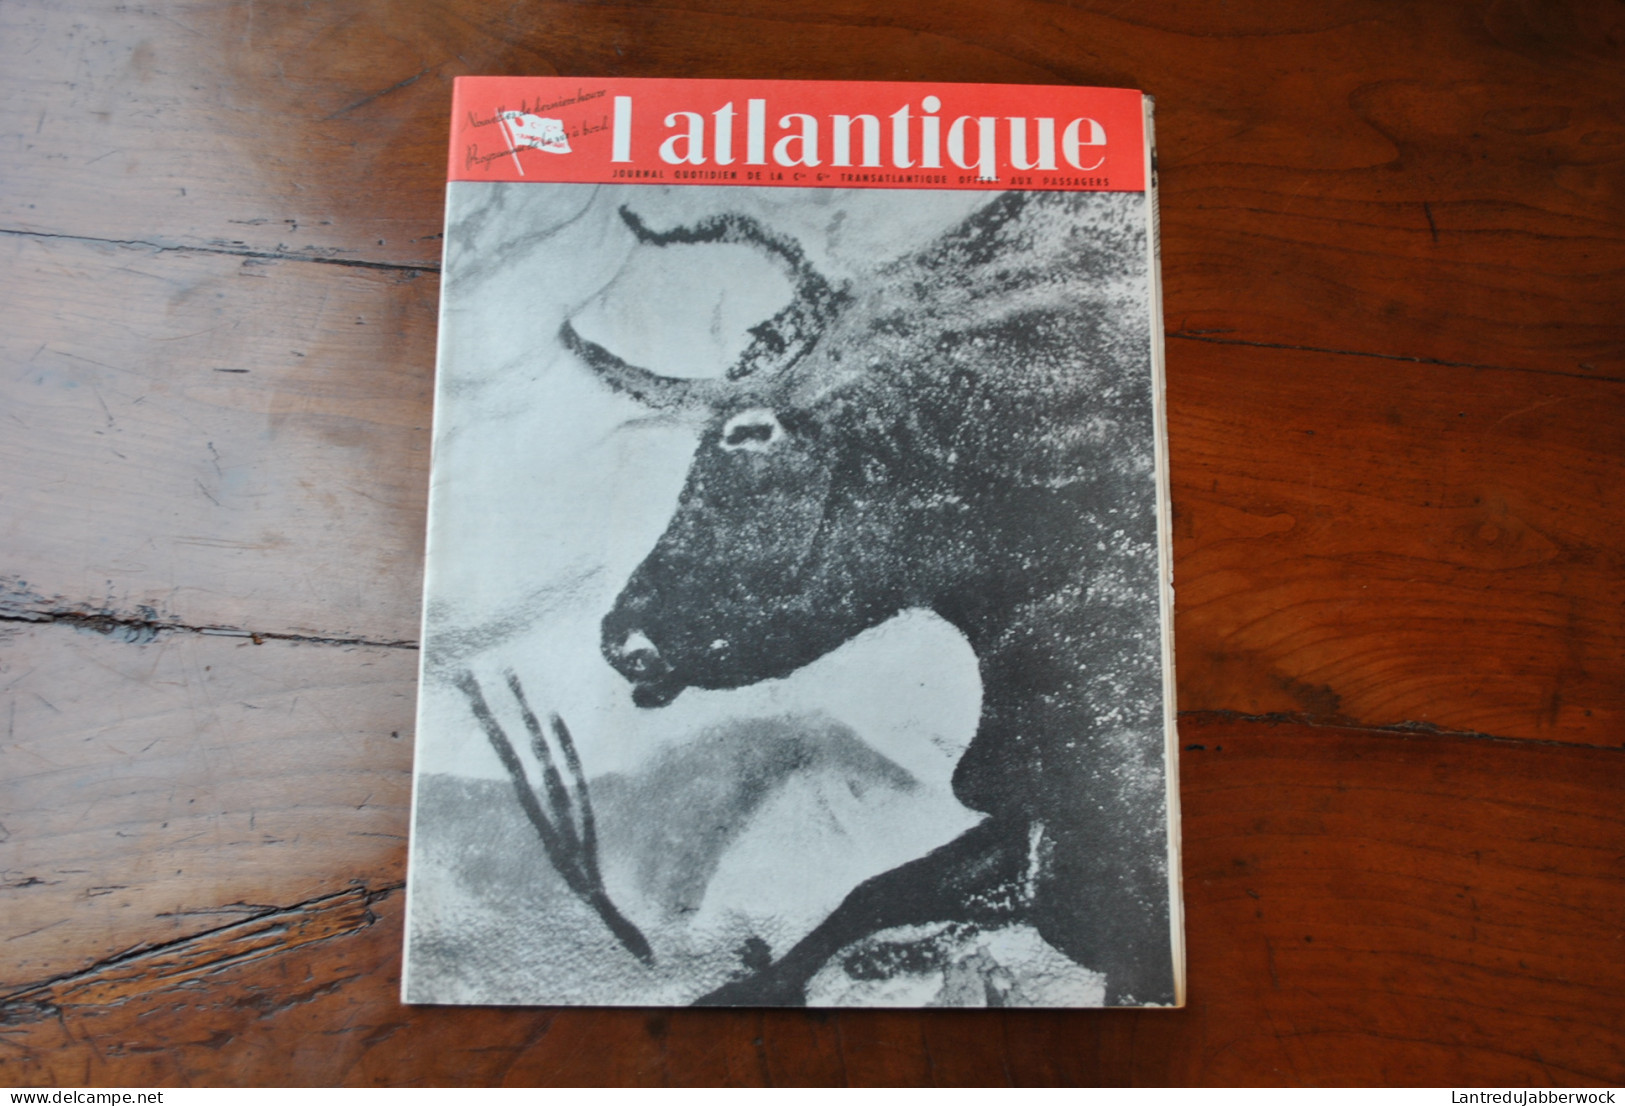 L'Atlantique Journal quotidien Cie Transatlantique offert aux passagers 1956 5 N° Programme de la vie à bord French Line